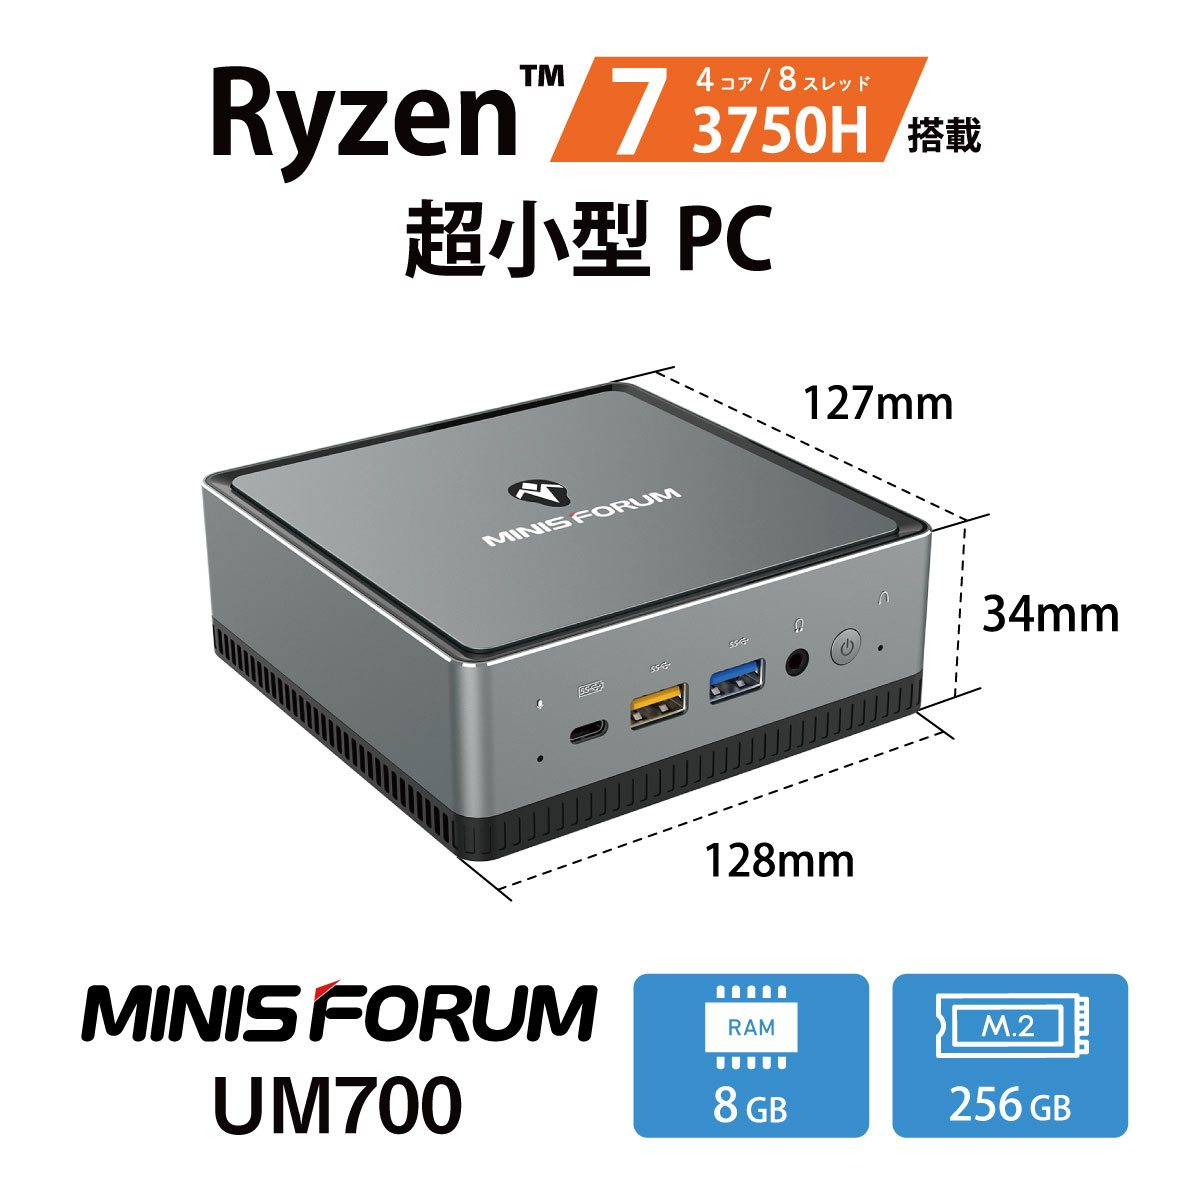 MINISFORUM DeskMini UM700 - デスクトップ型PC